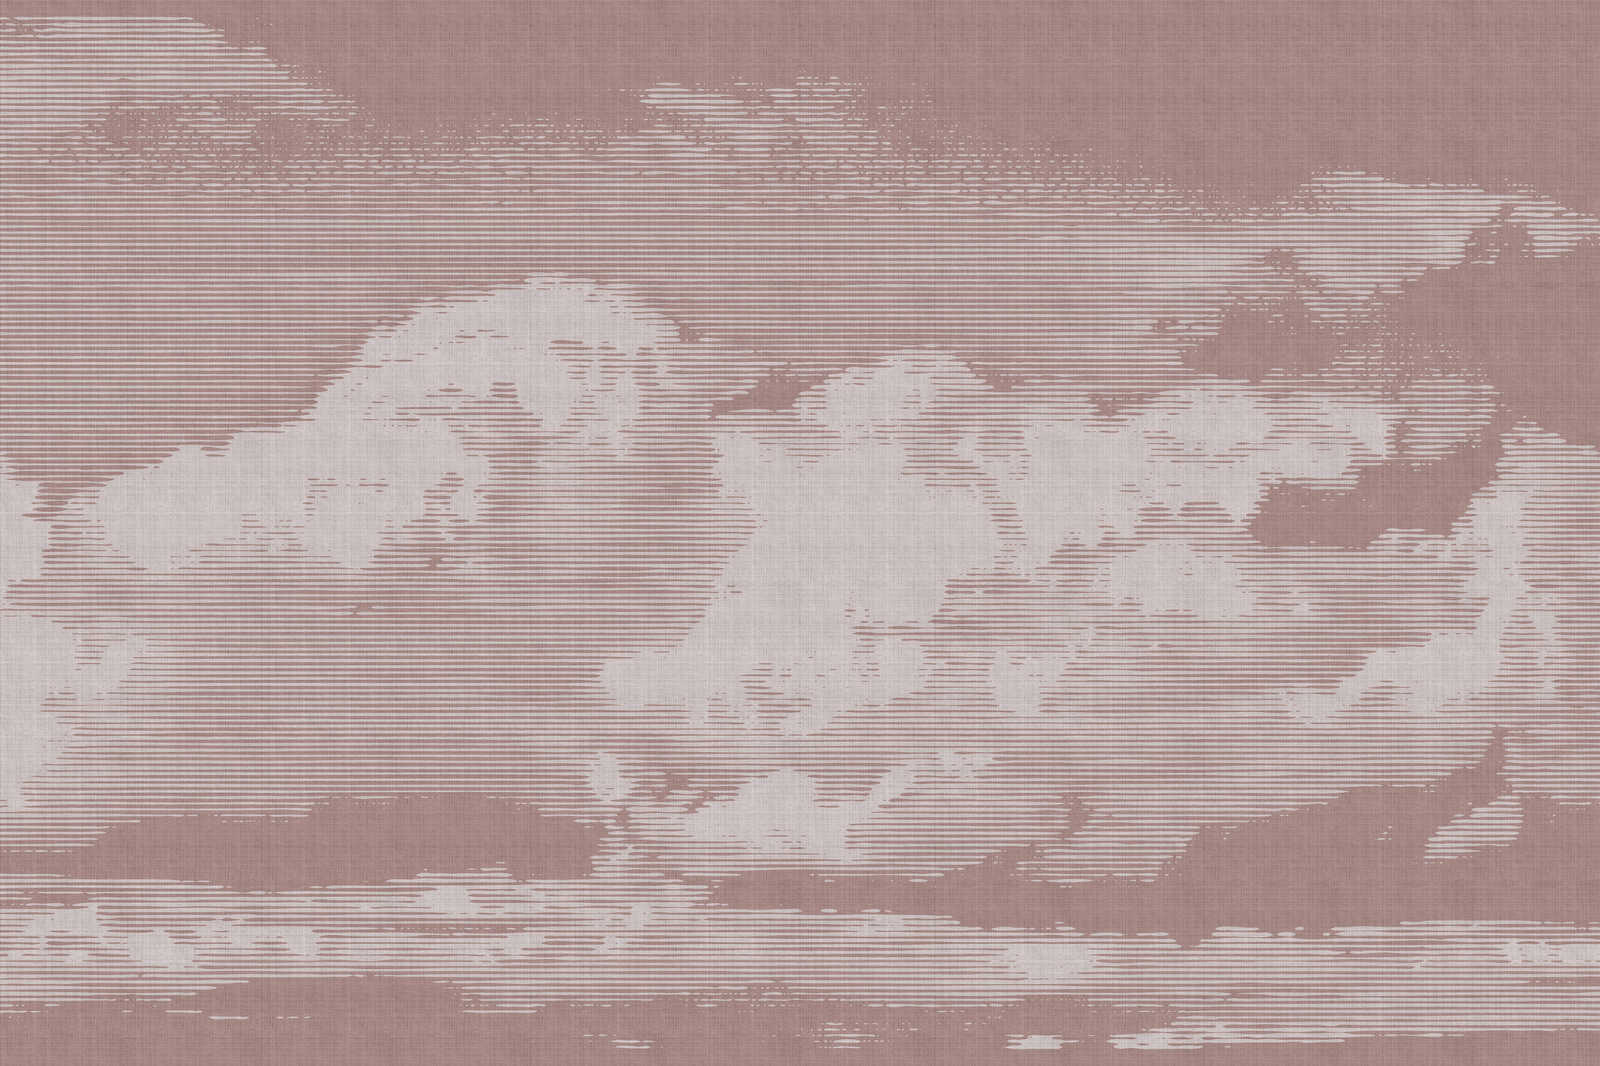             Clouds 3 - Himmlisches Leinwandbild mit Wolkenmotiv - Naturleinen Optik – 1,20 m x 0,80 m
        